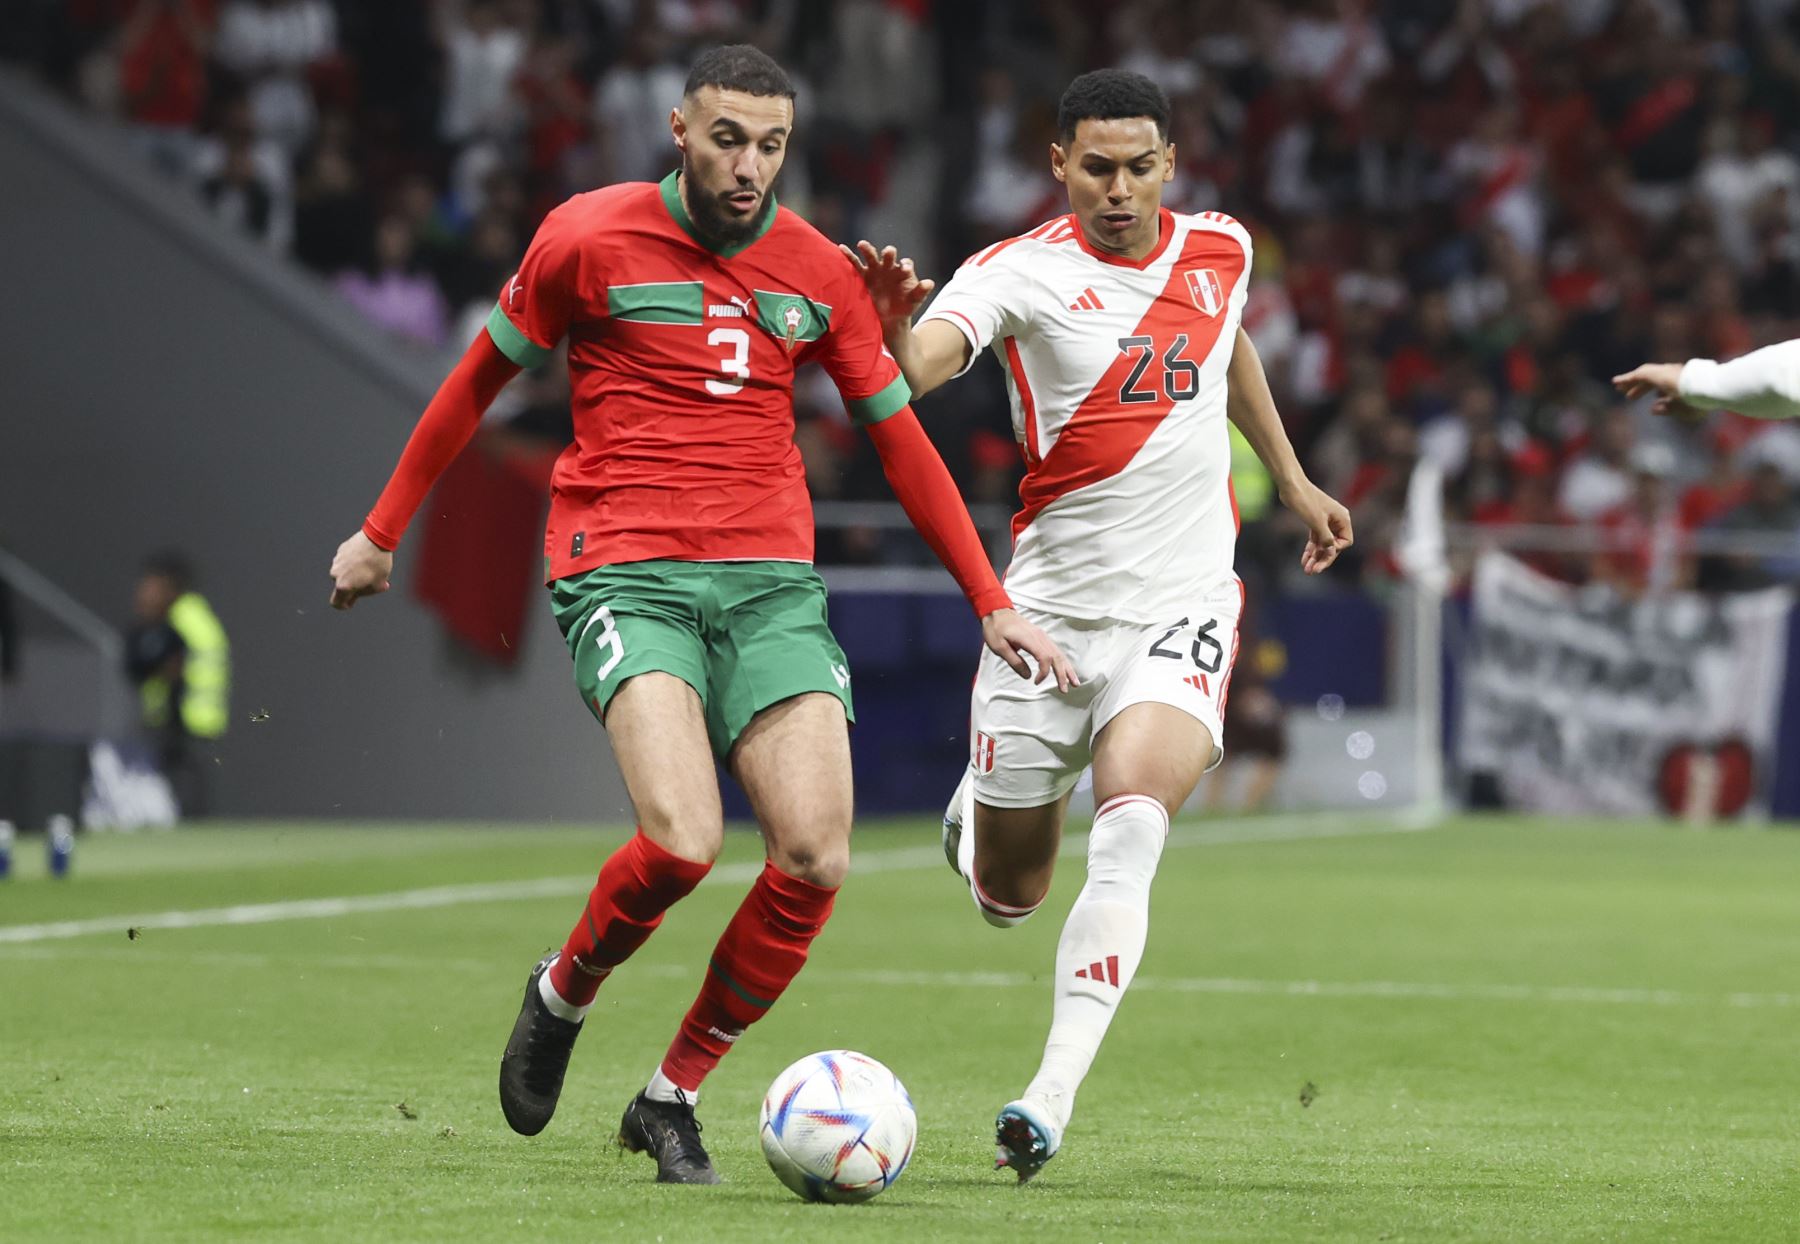 El defensa de la selección marroquí de fútbol Noussair Mazraoui  juega un balón ante Marcos López, de Perú, durante el partido amistoso que las selecciones de Marruecos y Perú disputan este martes en el estadio Civitas Metropolitano, en Madrid.
Foto: EFE